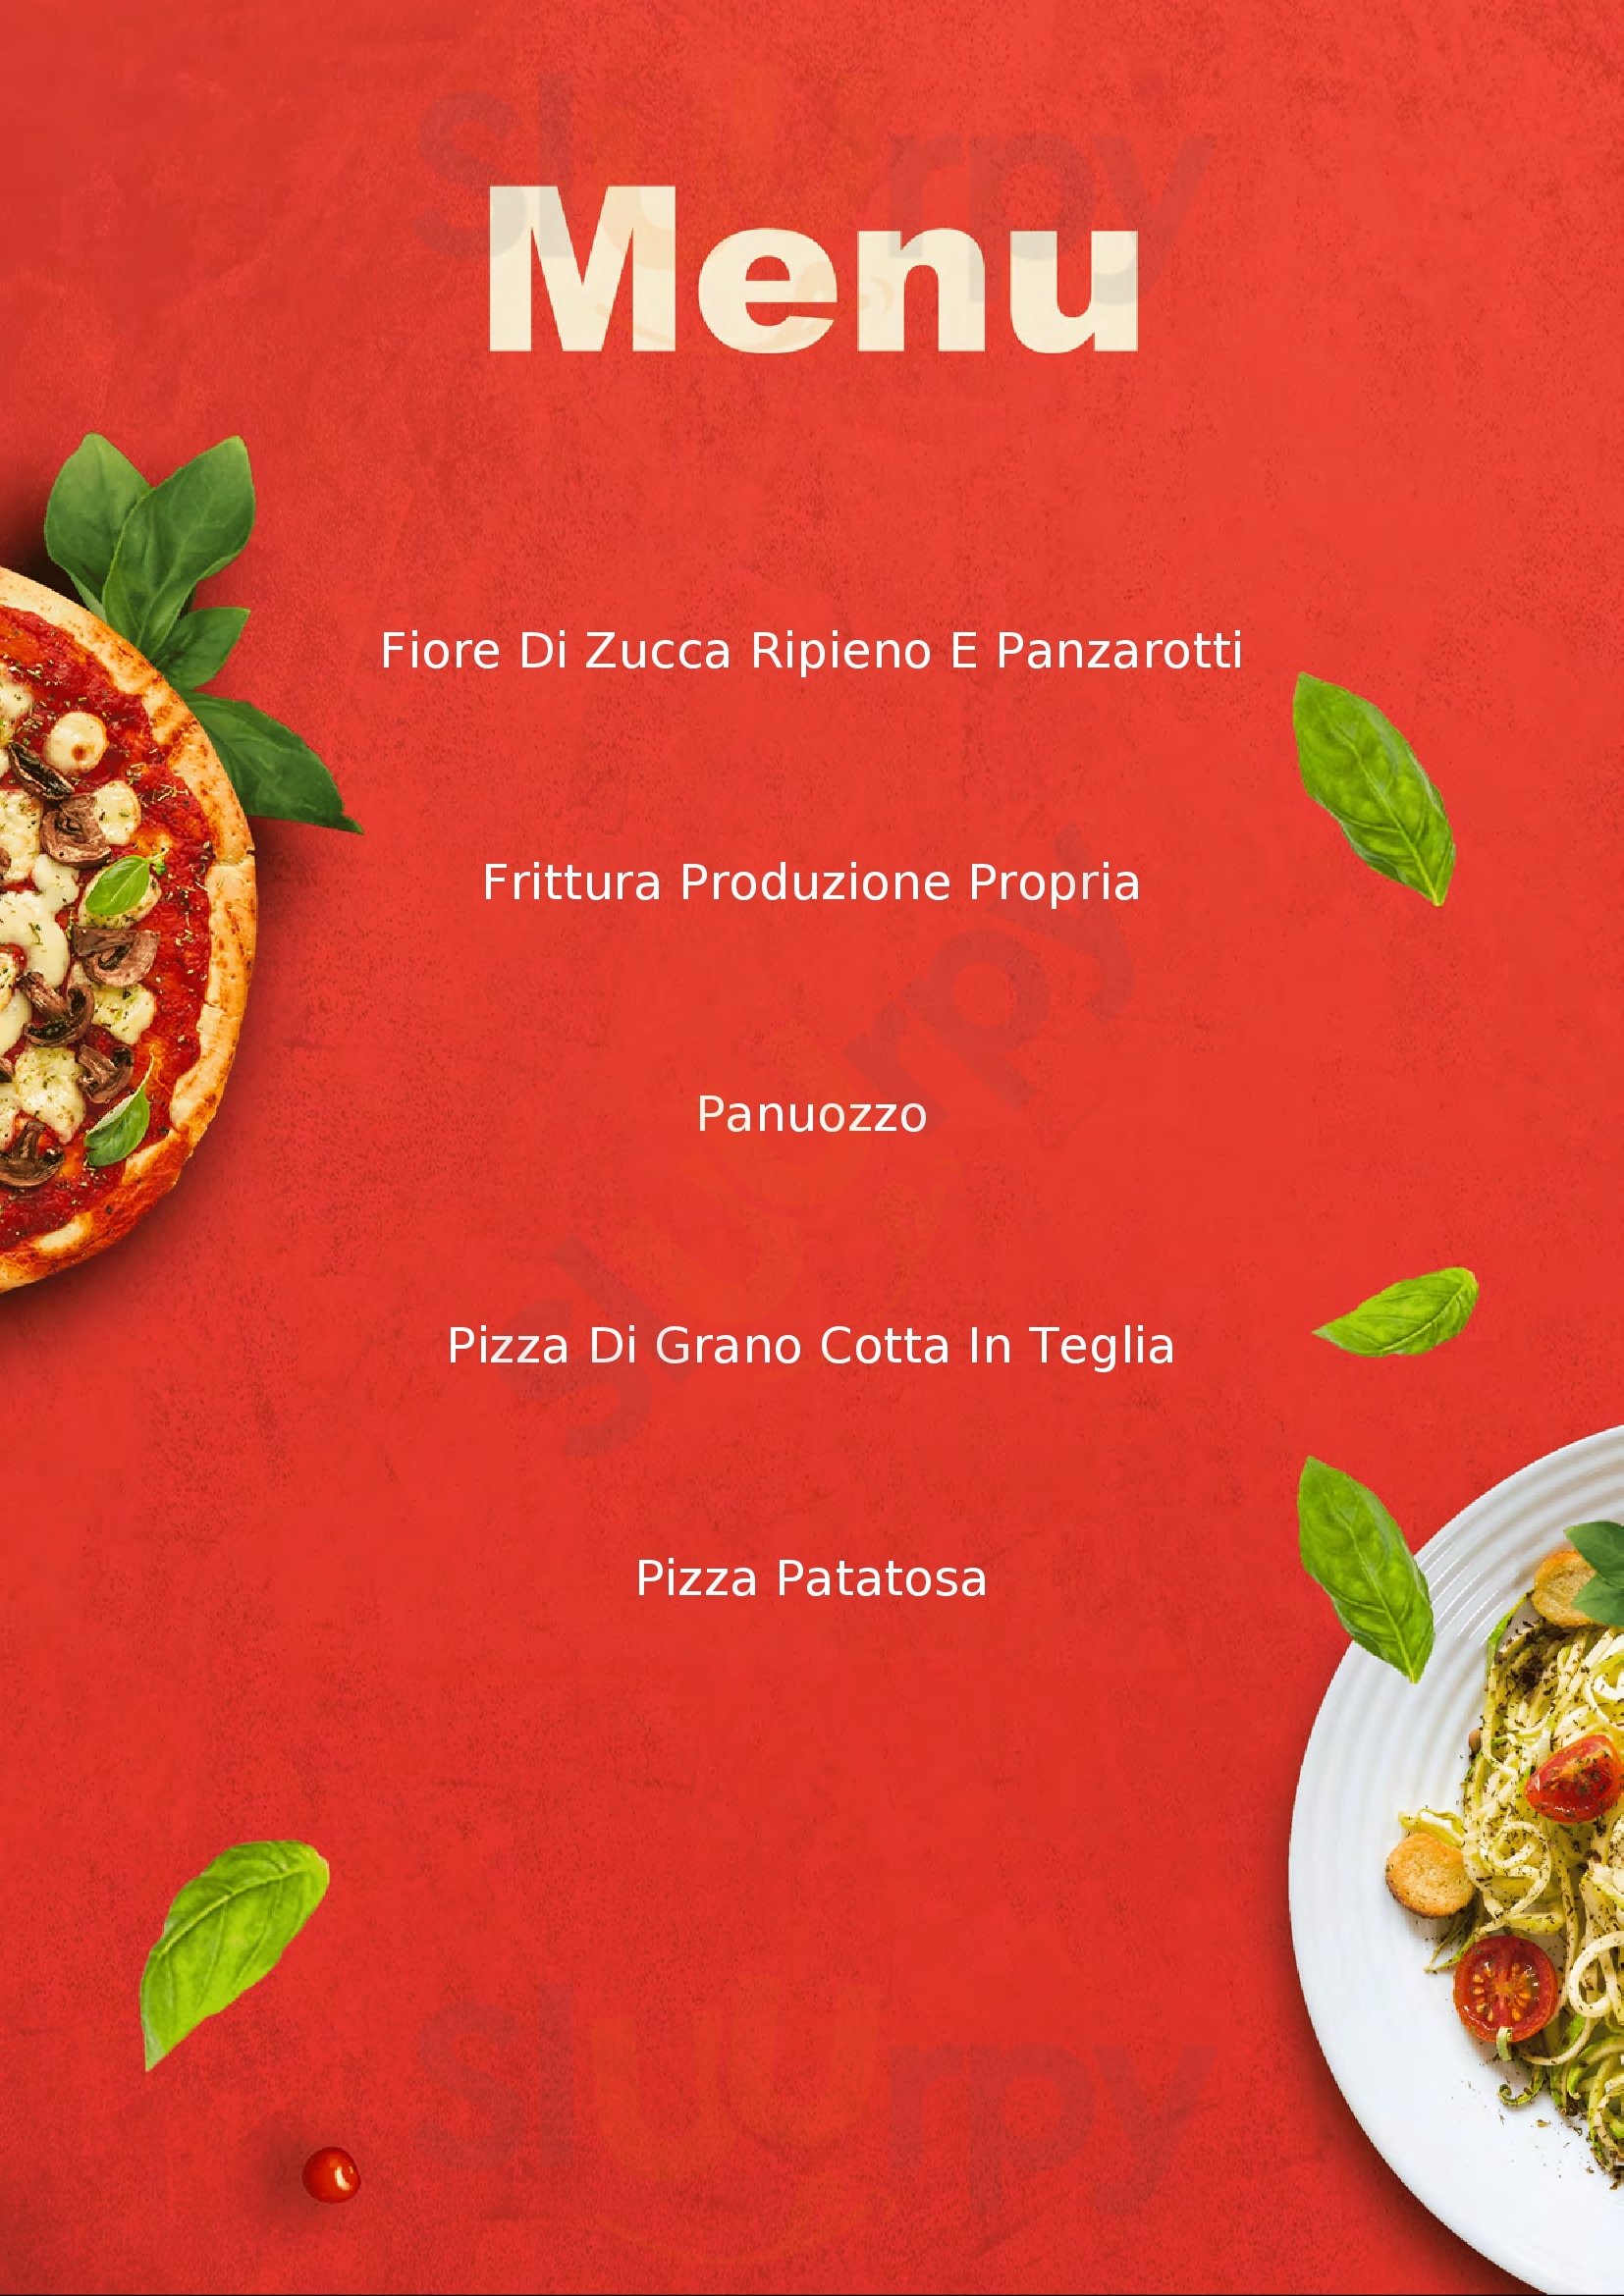 Artepizza by Non Solo Pizza Sant'Antonio Abate menù 1 pagina